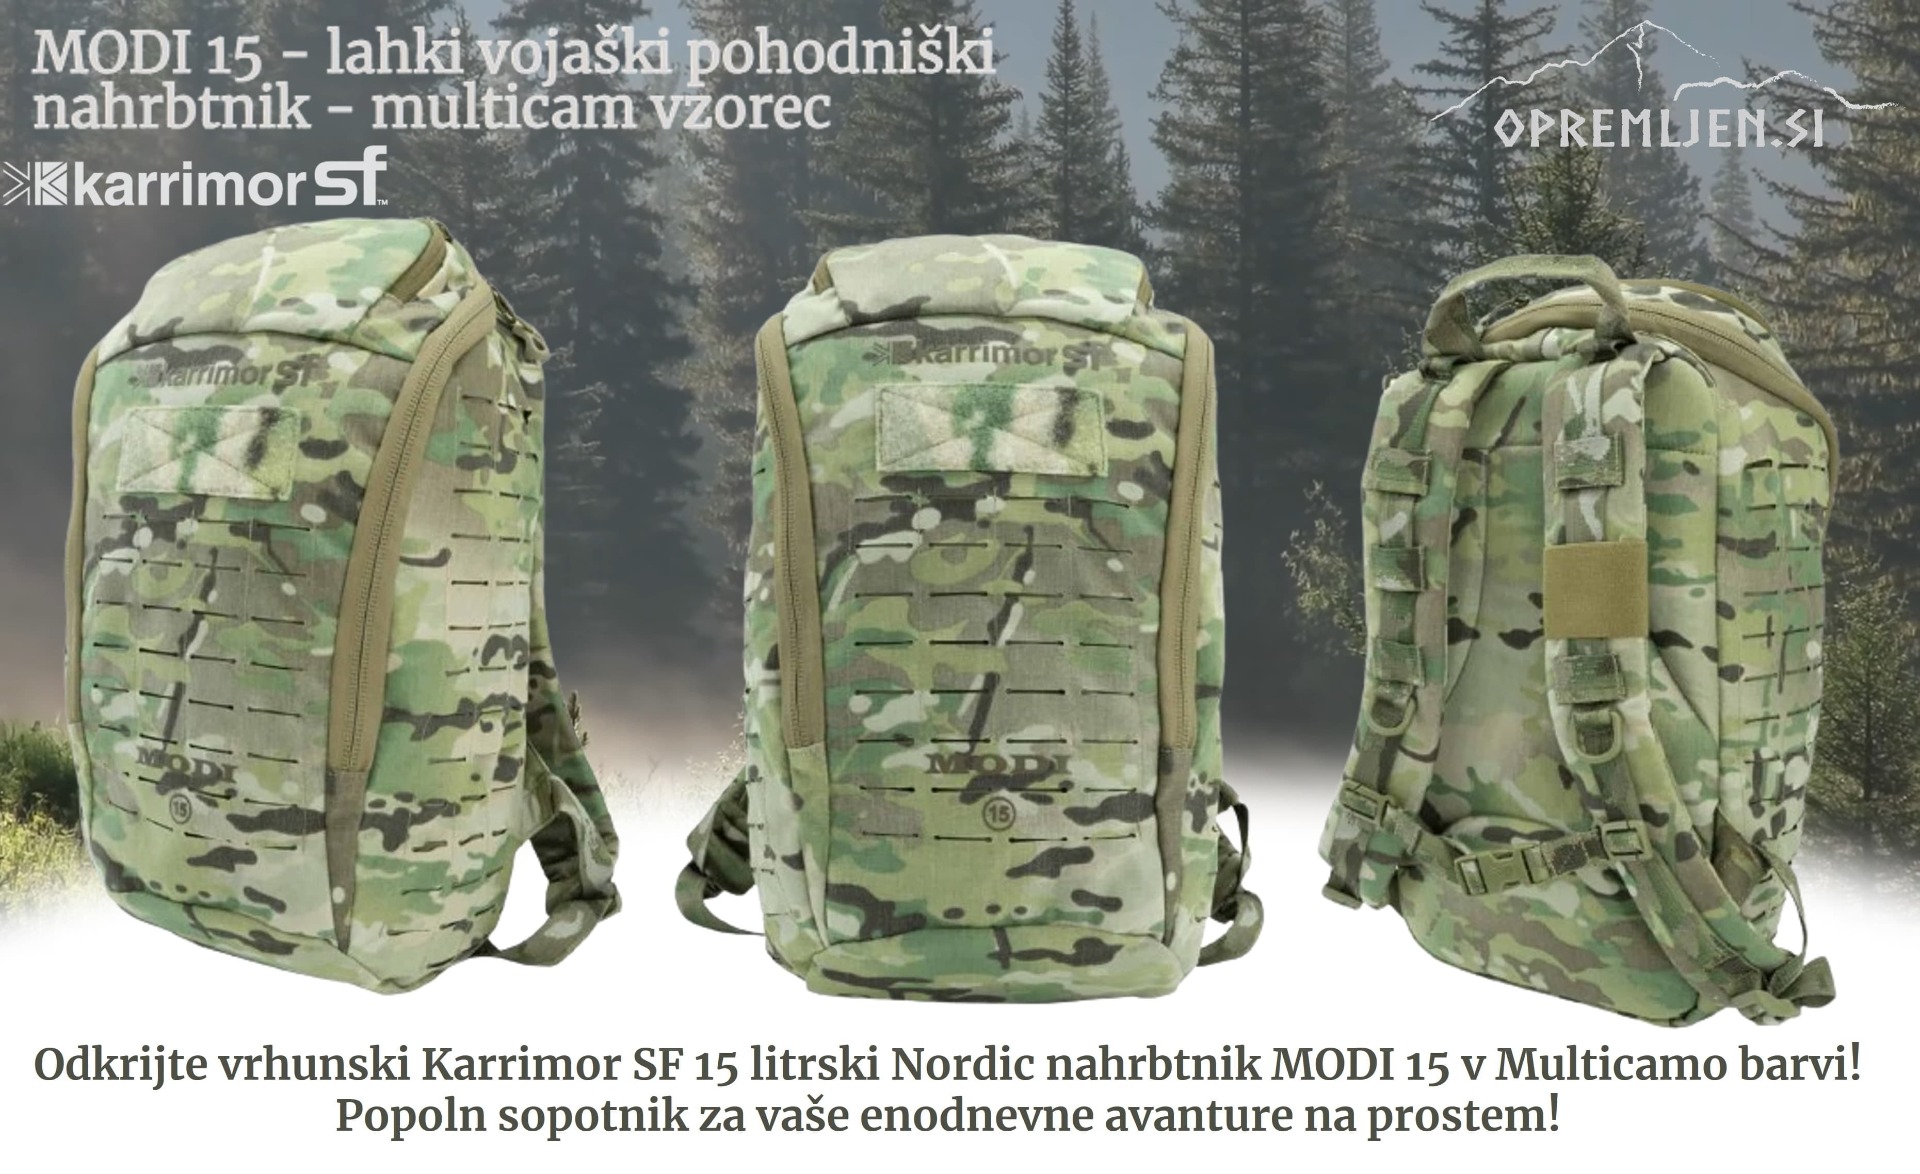 Odkrijte Karrimor SF Nordic linijo vojaških nahrbtnikov, kot je Modi 15, vaš idealen sopotnik za avanture v naravi. Visoko kakovosten in vzdržljiv nahrbtnik za pohodništvo in ekstremne razmere.